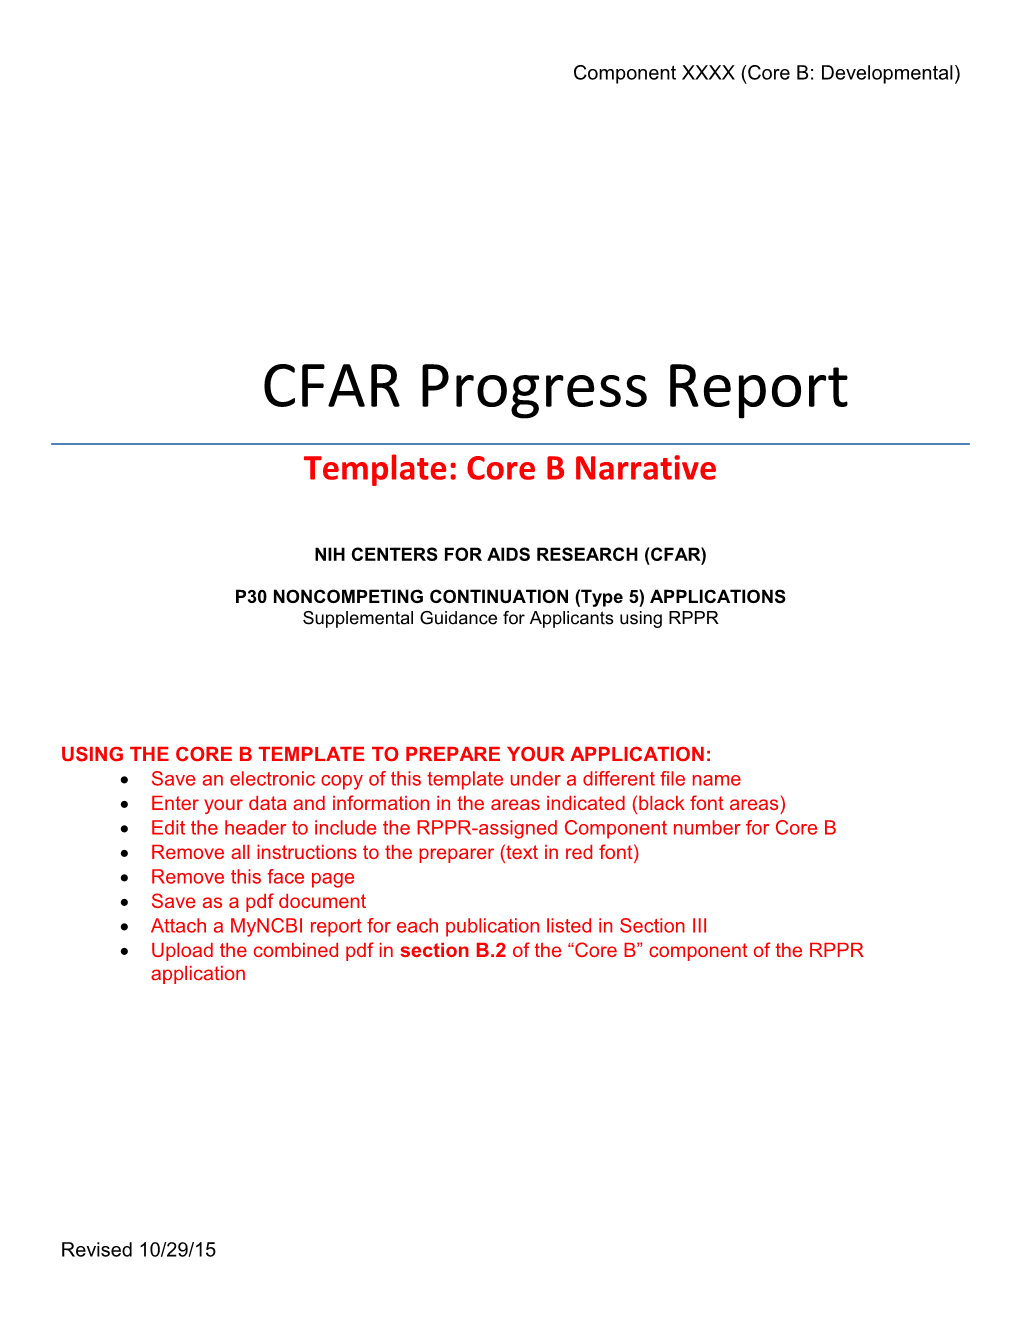 CFAR Progress Report